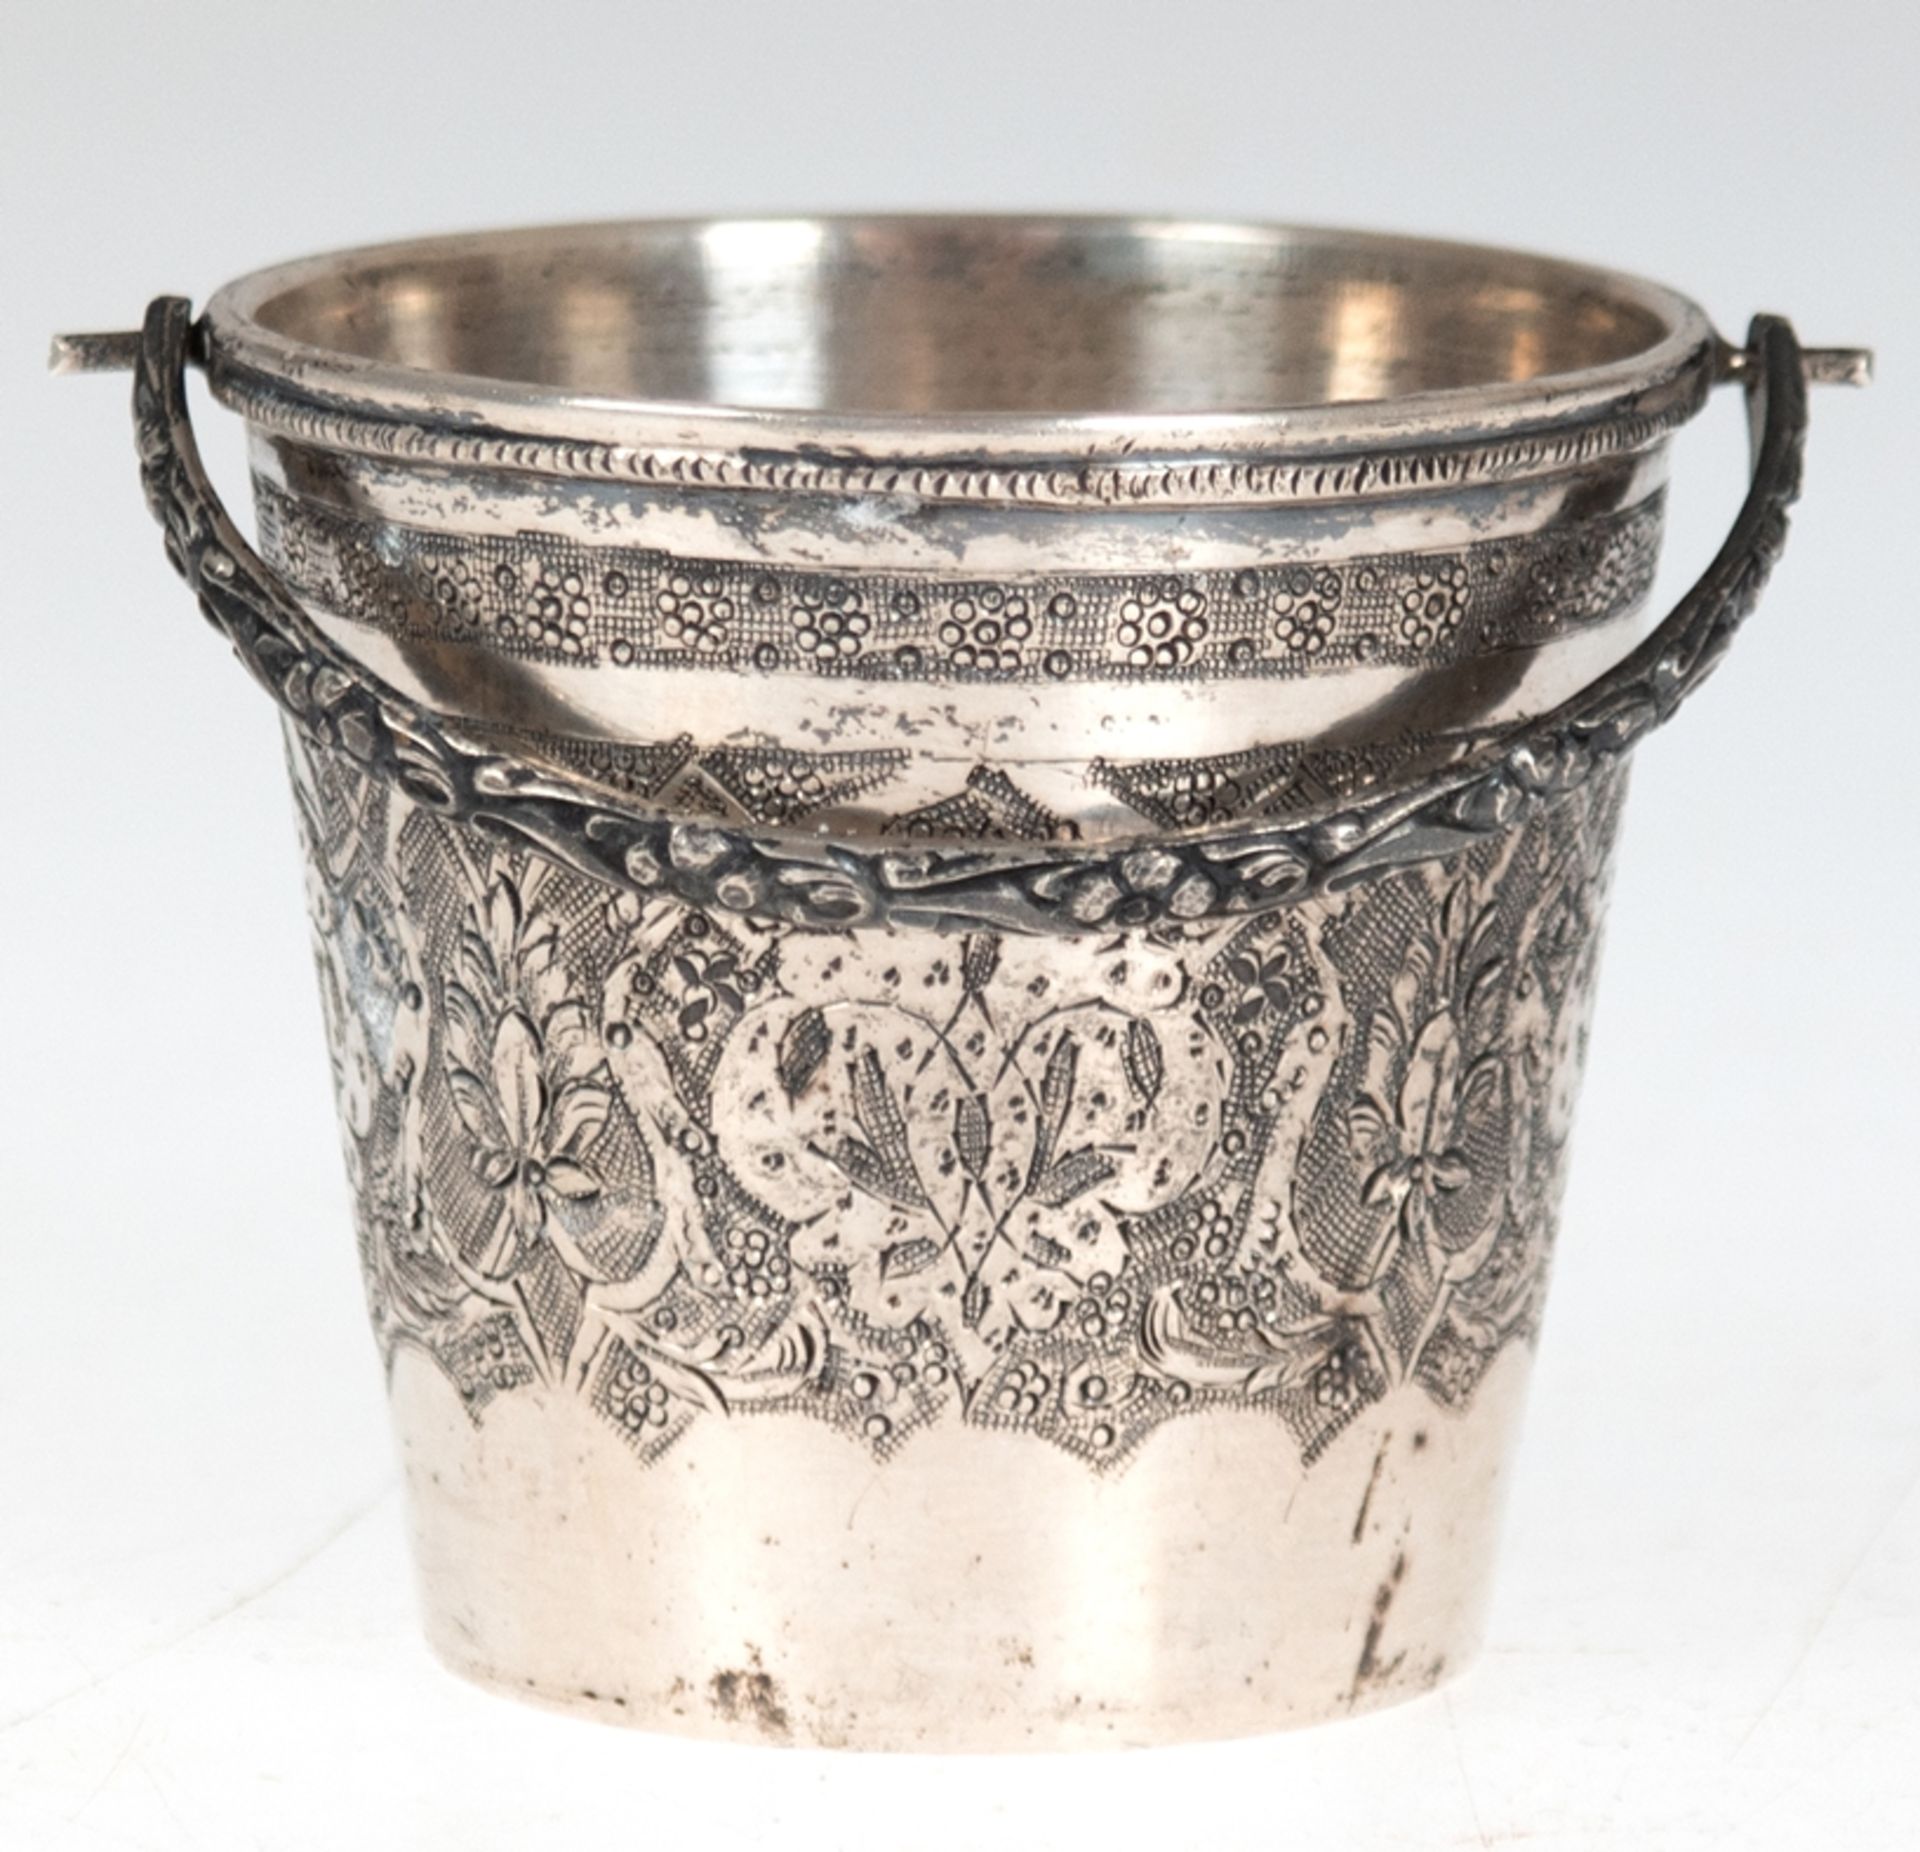 Becher, Rußland, 84 Zol. Silber, in Form eines Eimers mit floral reliefiertem Klapphenkel, umlaufen